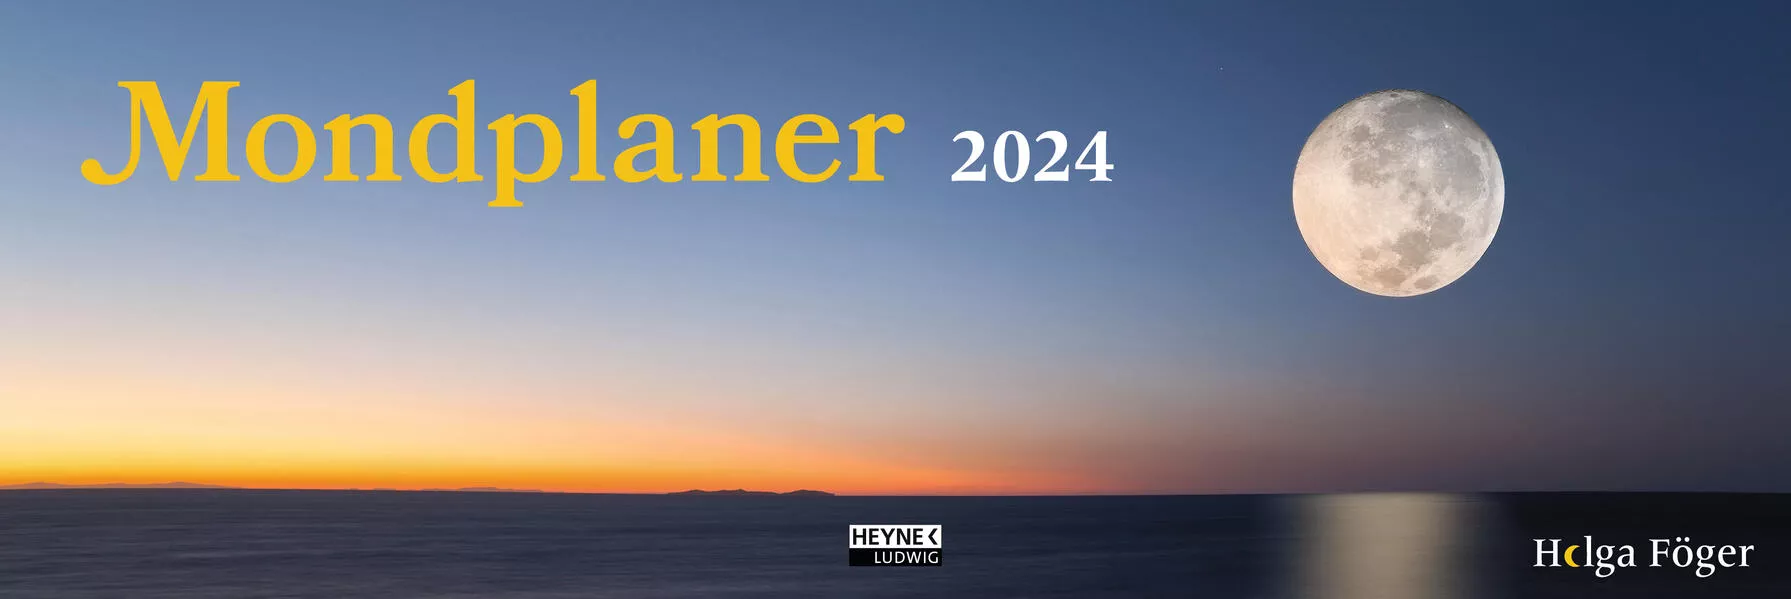 Mondplaner 2024</a>